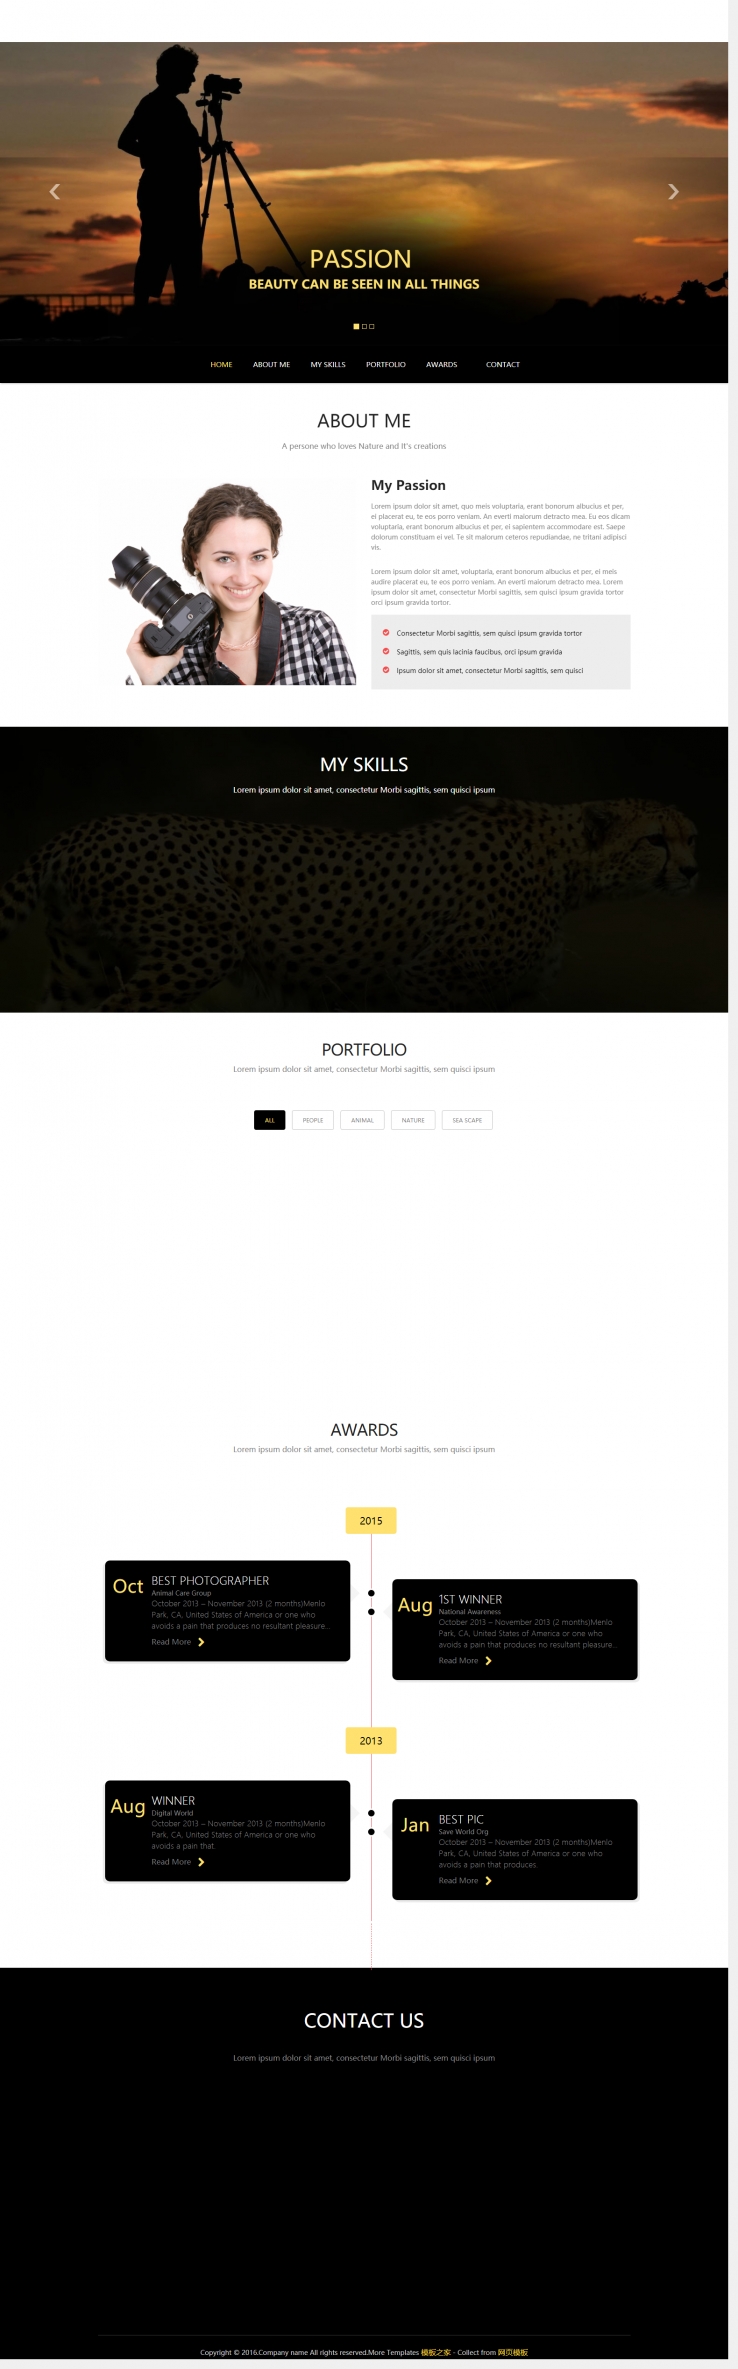 宽屏黑色风格的摄影爱好者展览门户网站模板下载